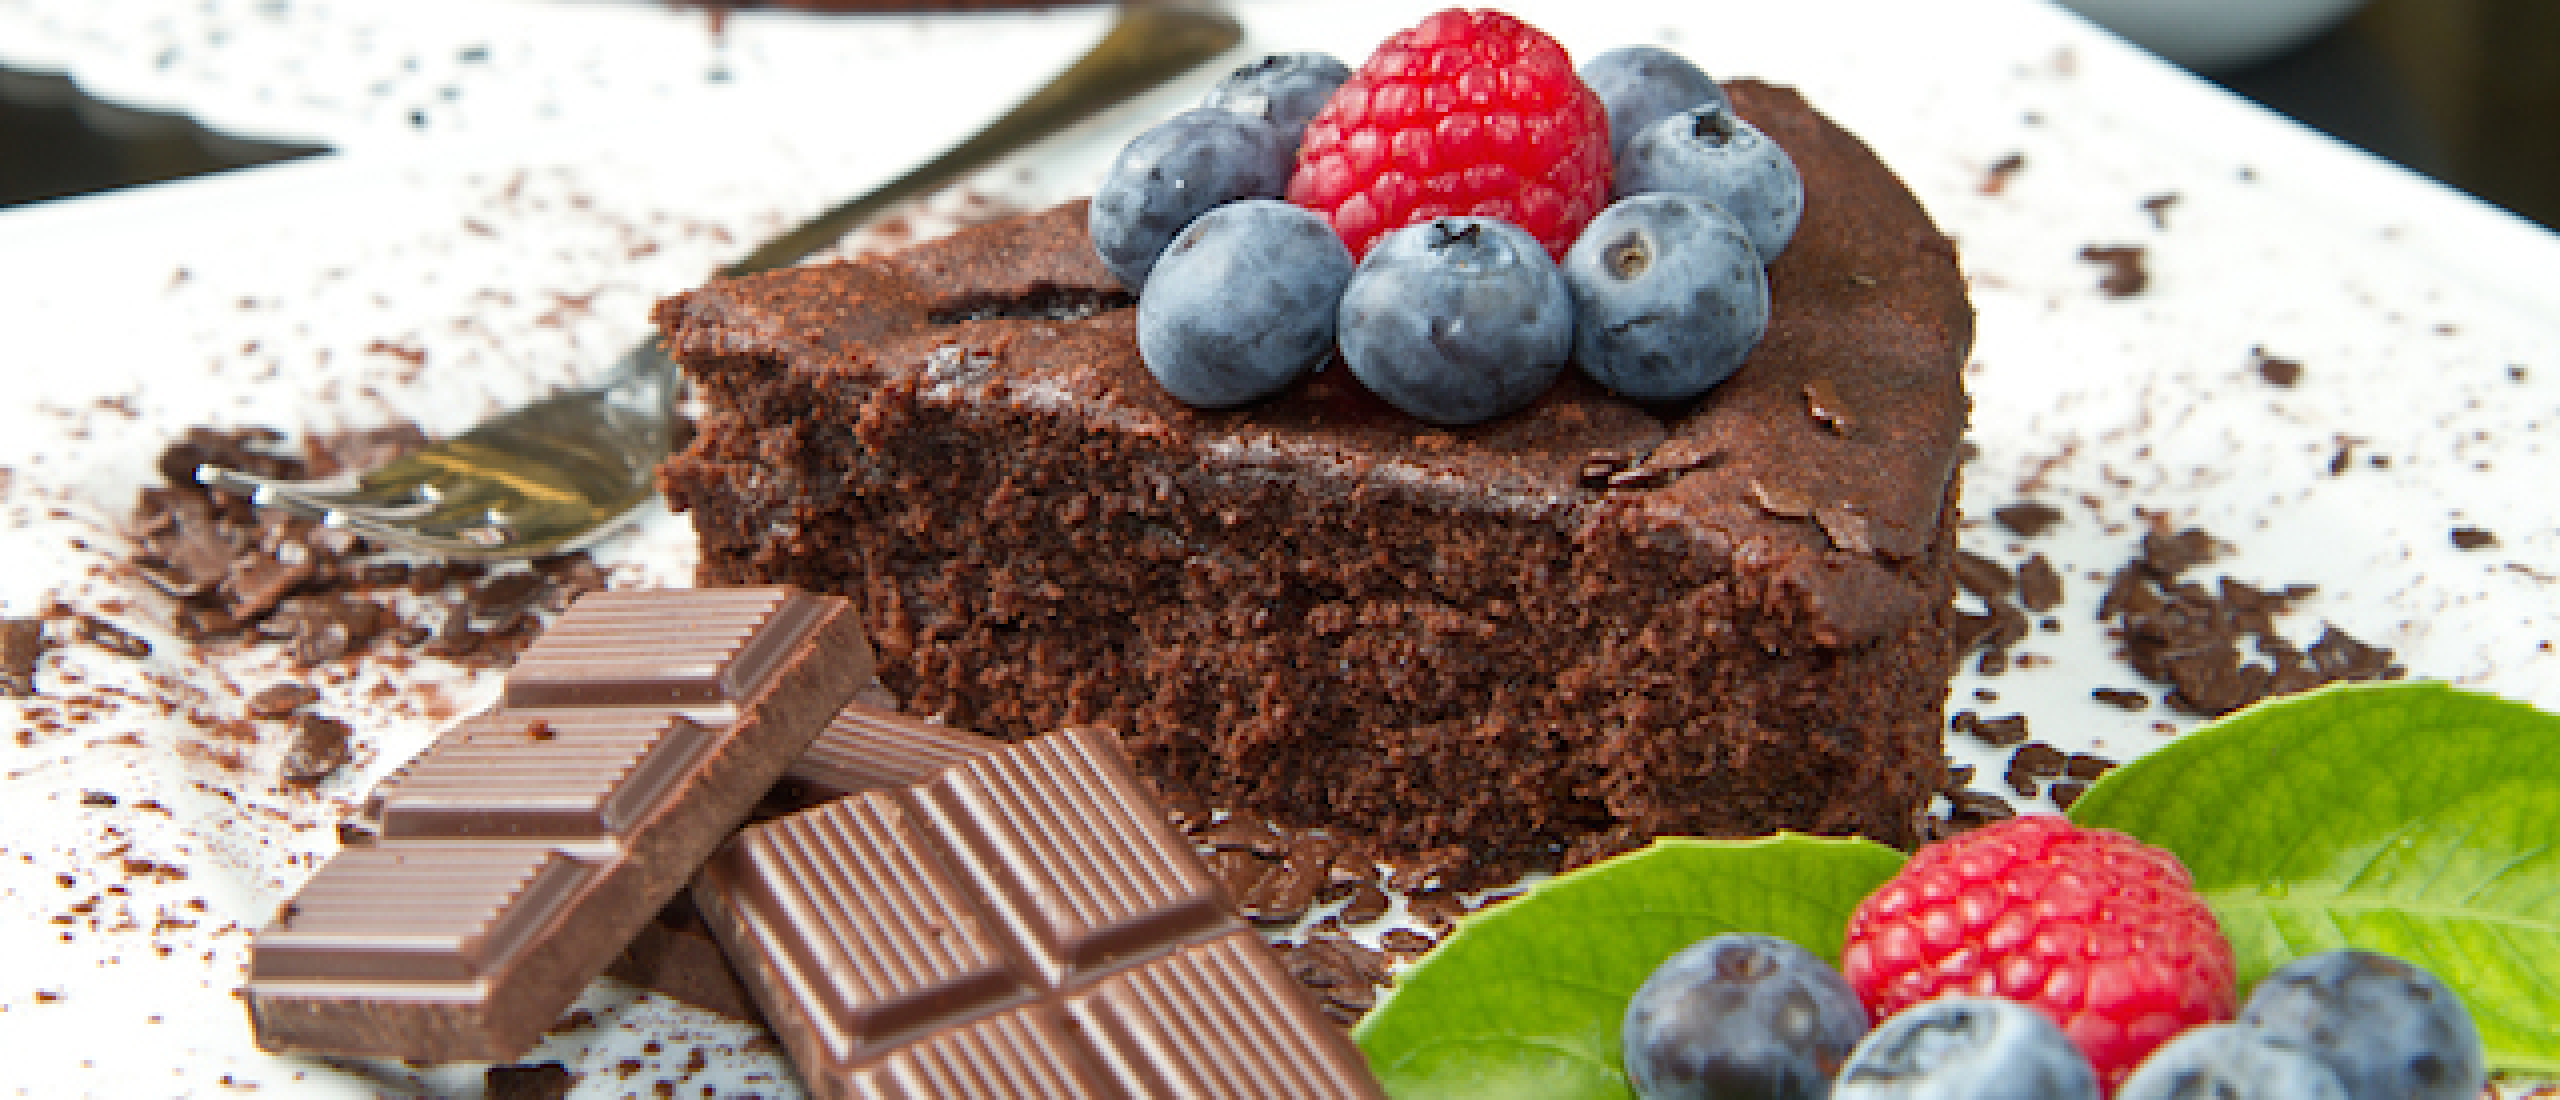 Chocolade taart als ontbijt helpt bij afvallen?